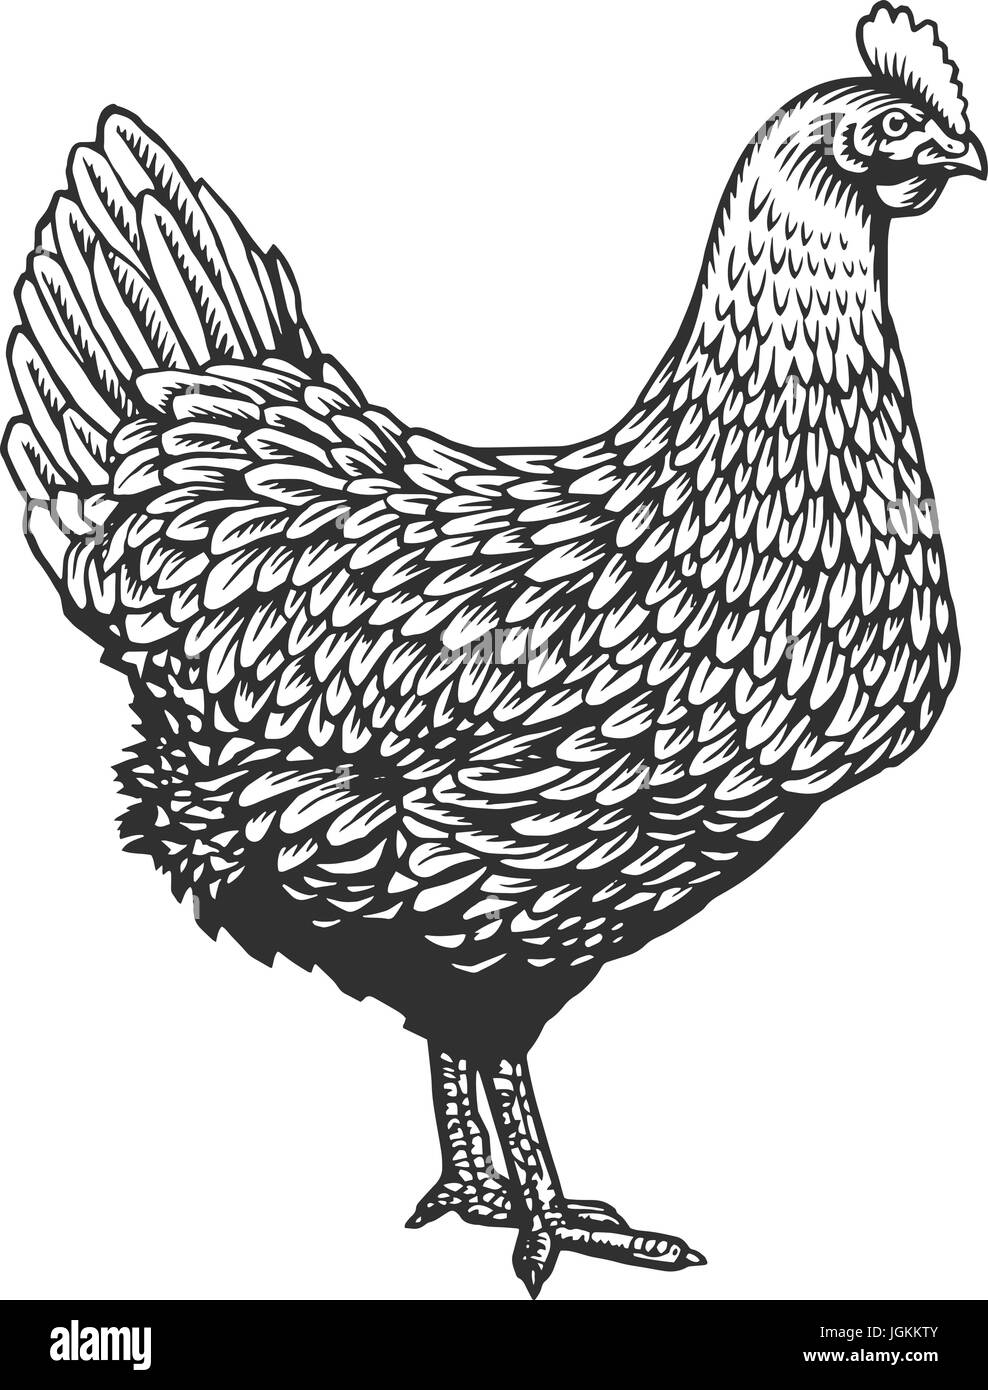 Huhn oder Henne in Vintage Kupferstich oder Radierung Stil gezeichnet. Bauernhof Geflügel Vogel isoliert auf weißem Hintergrund. Vektor-Illustration in monochromen Farben für Poster, Speisekarte, Website, Logo. Stock Vektor